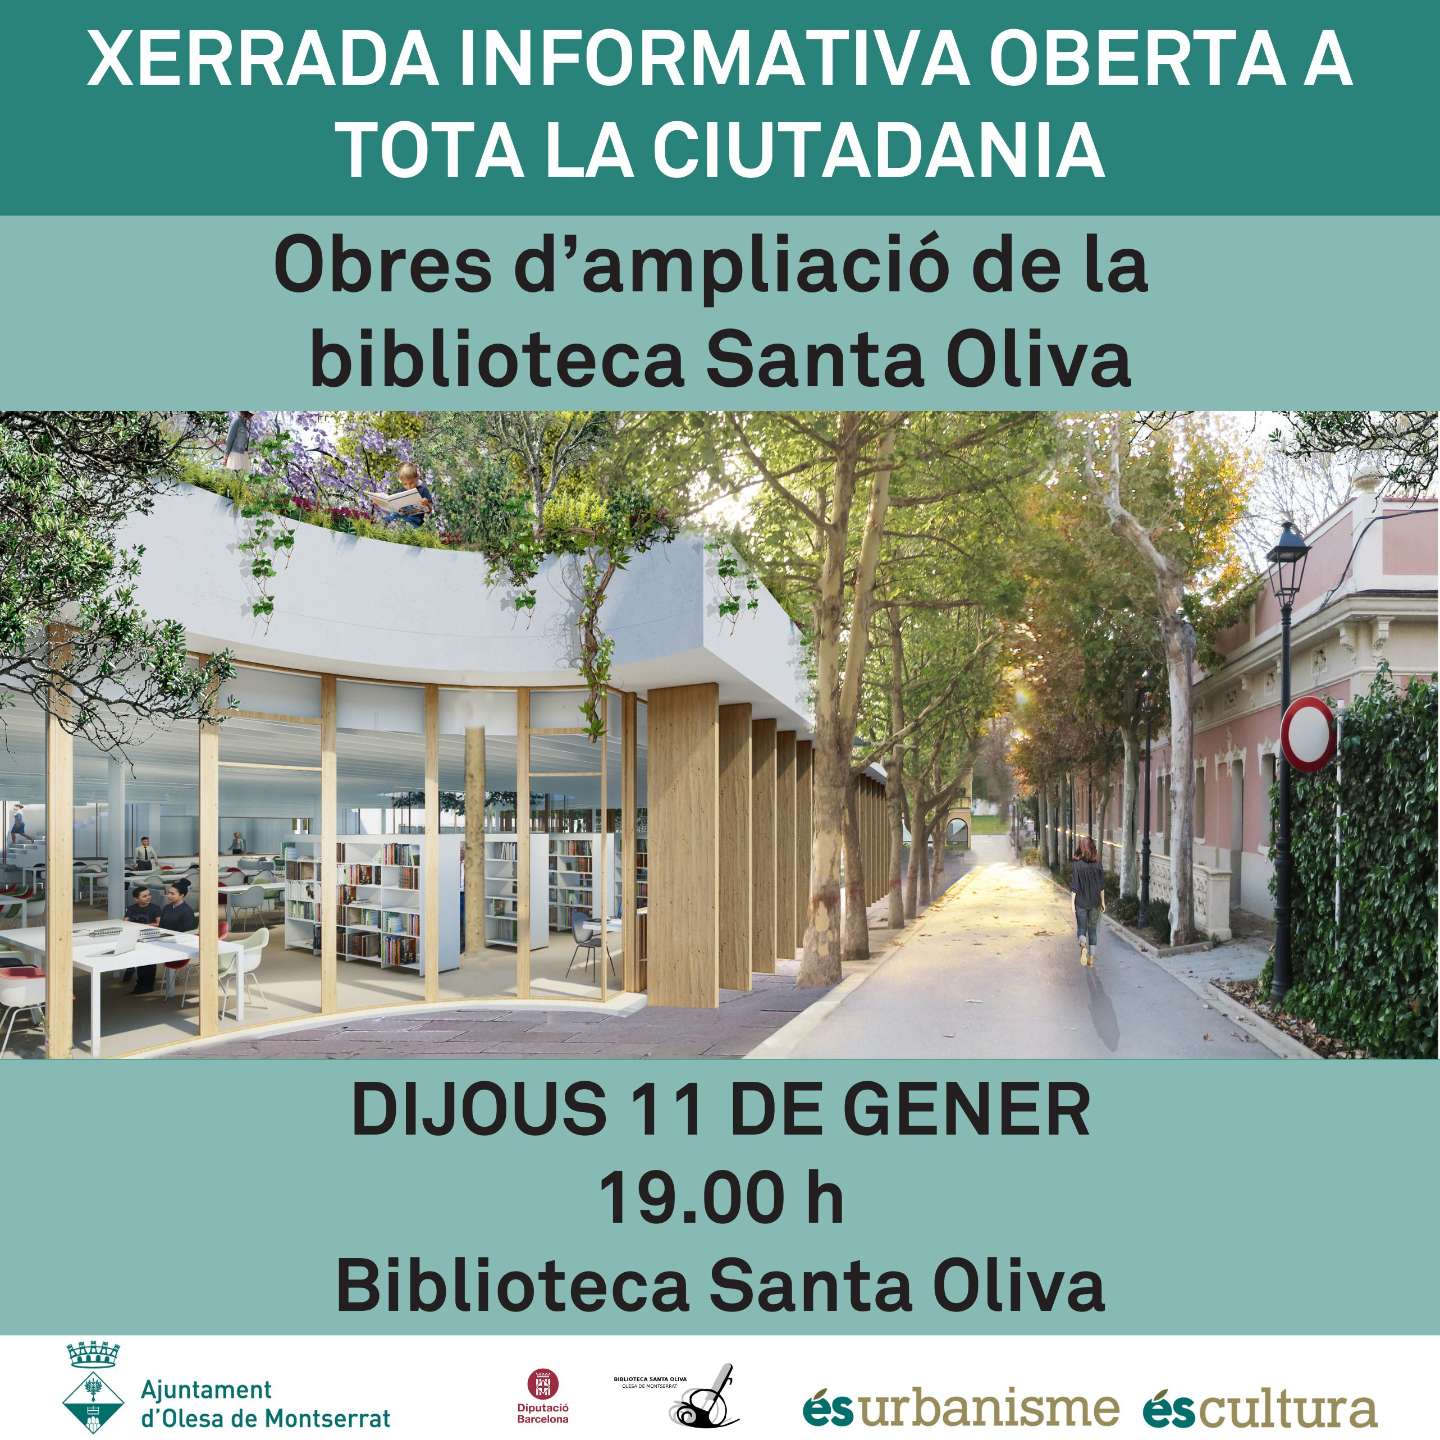 Xerrada informativa sobre les obres d'ampliació de la biblioteca Santa Oliva